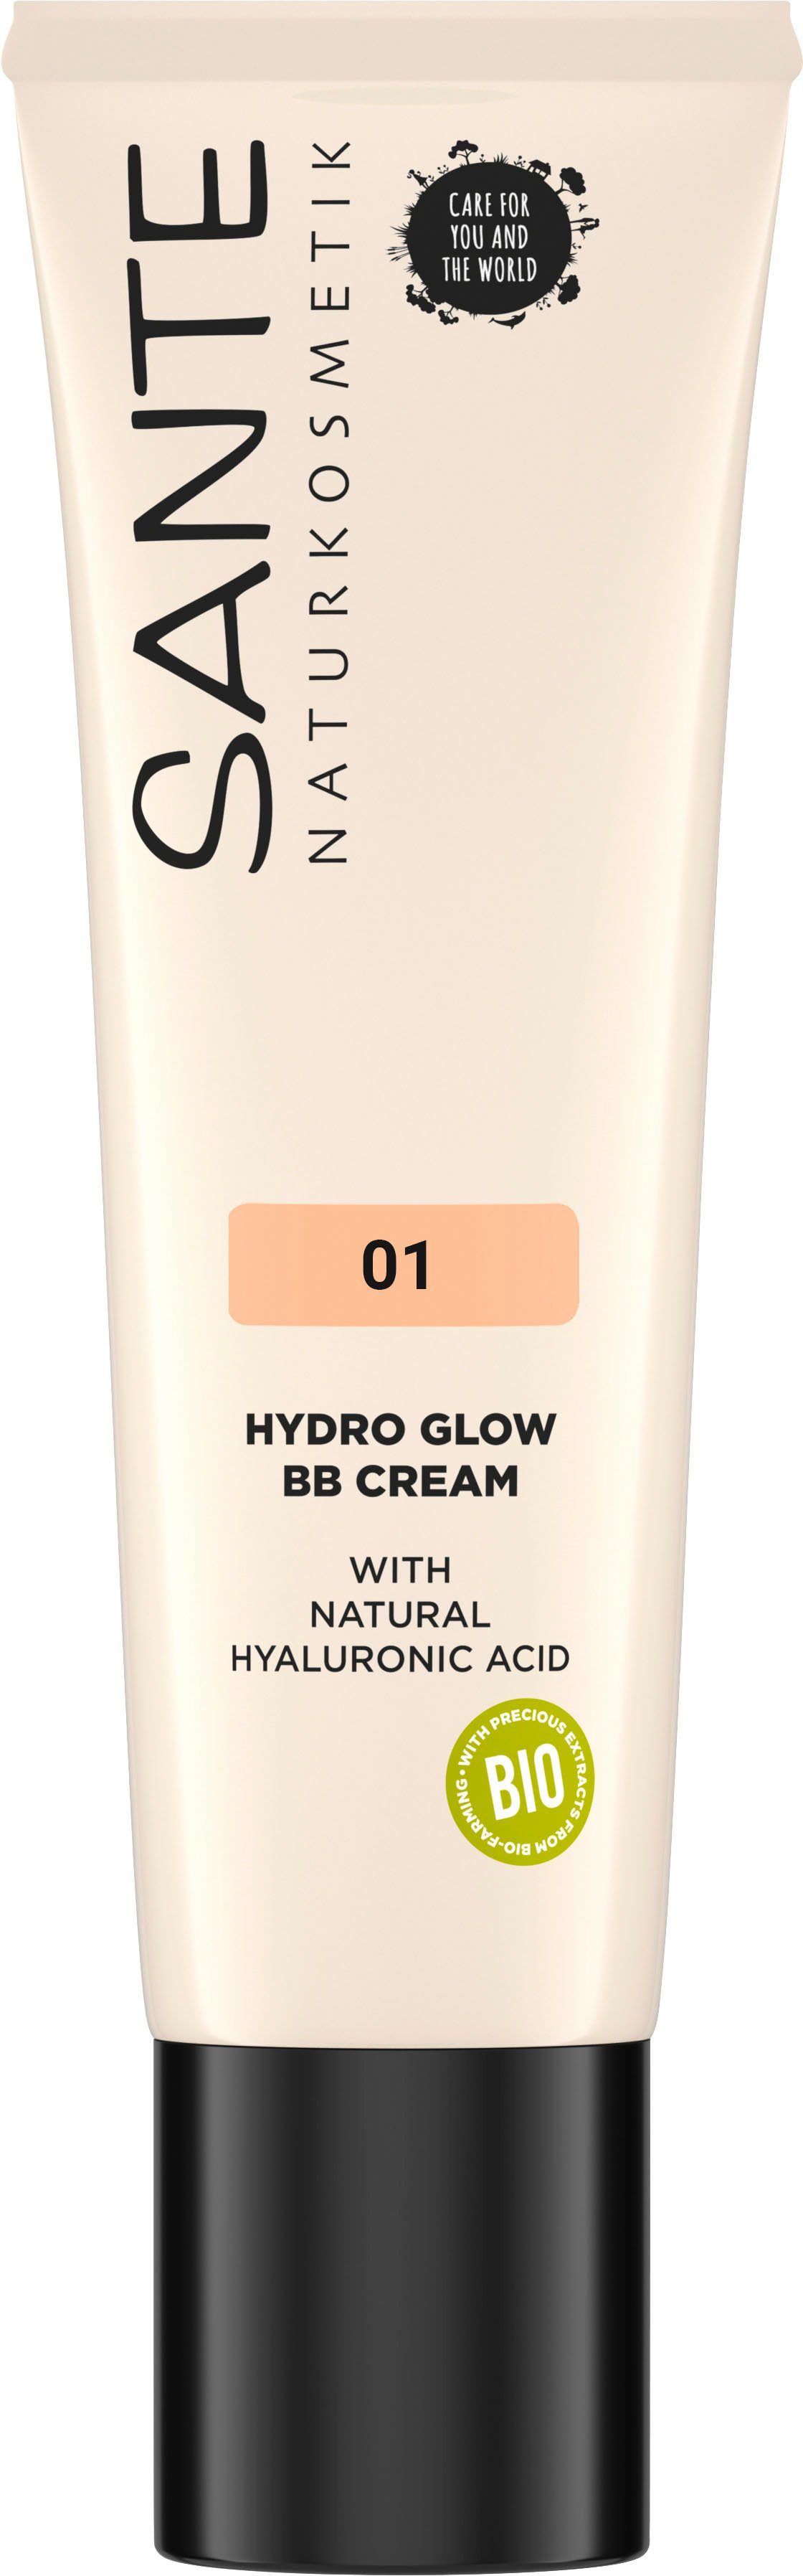 SANTE Make-up Sante Hydro Glow BB Cream, Langanhaltende Feuchtigkeit durch  natürliche Hyaluronsäure